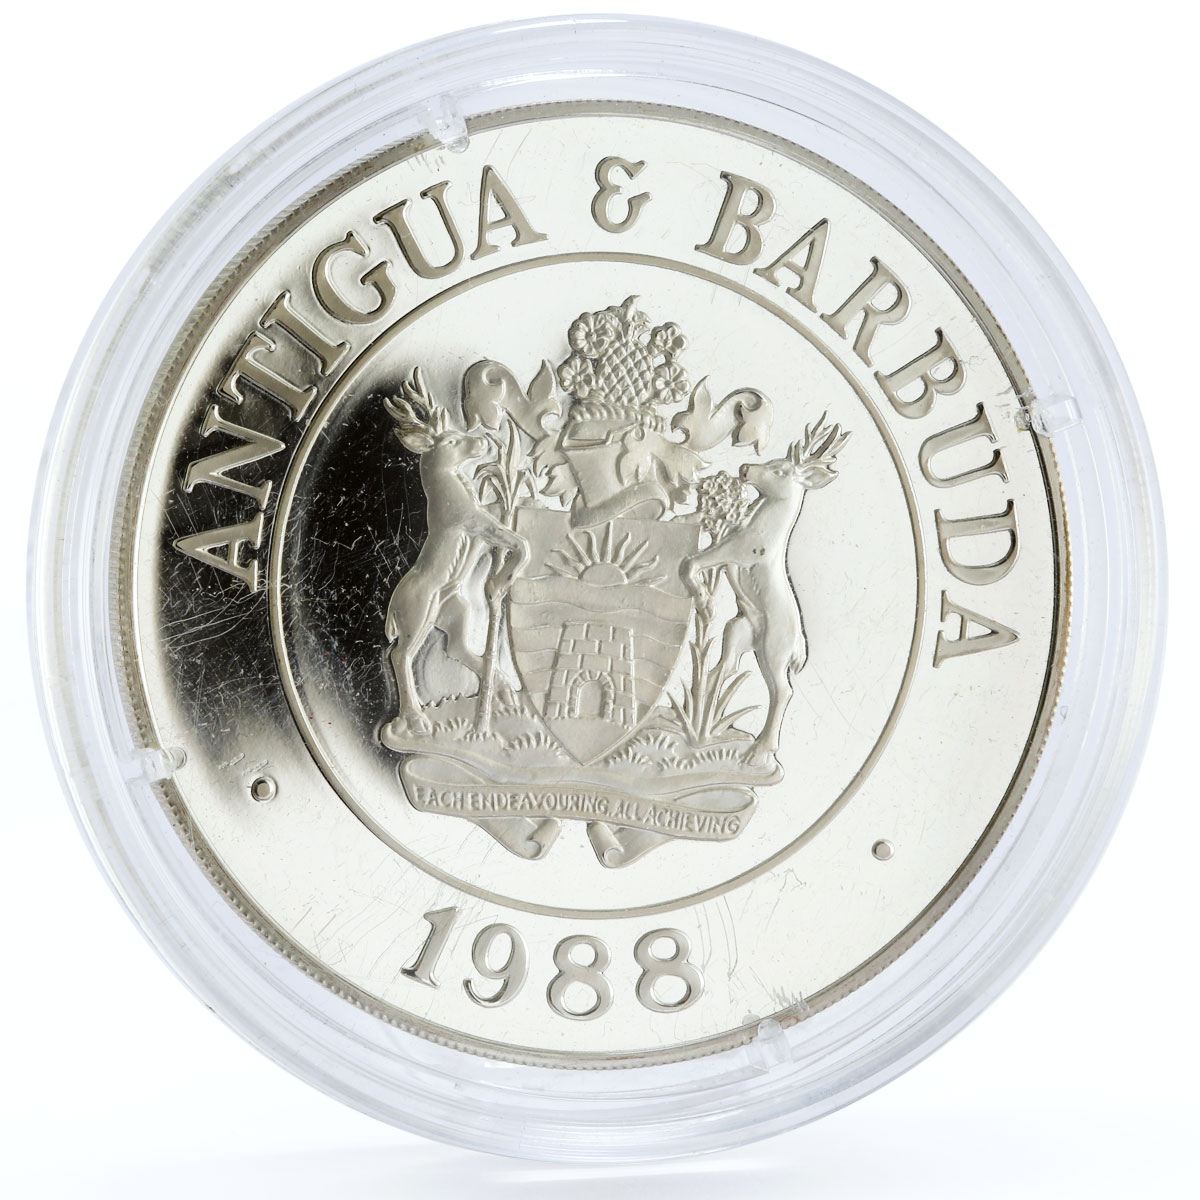 Antigua and Barbuda 100 dollars Endangered Wildlife Ibis Bird silver coin 1988